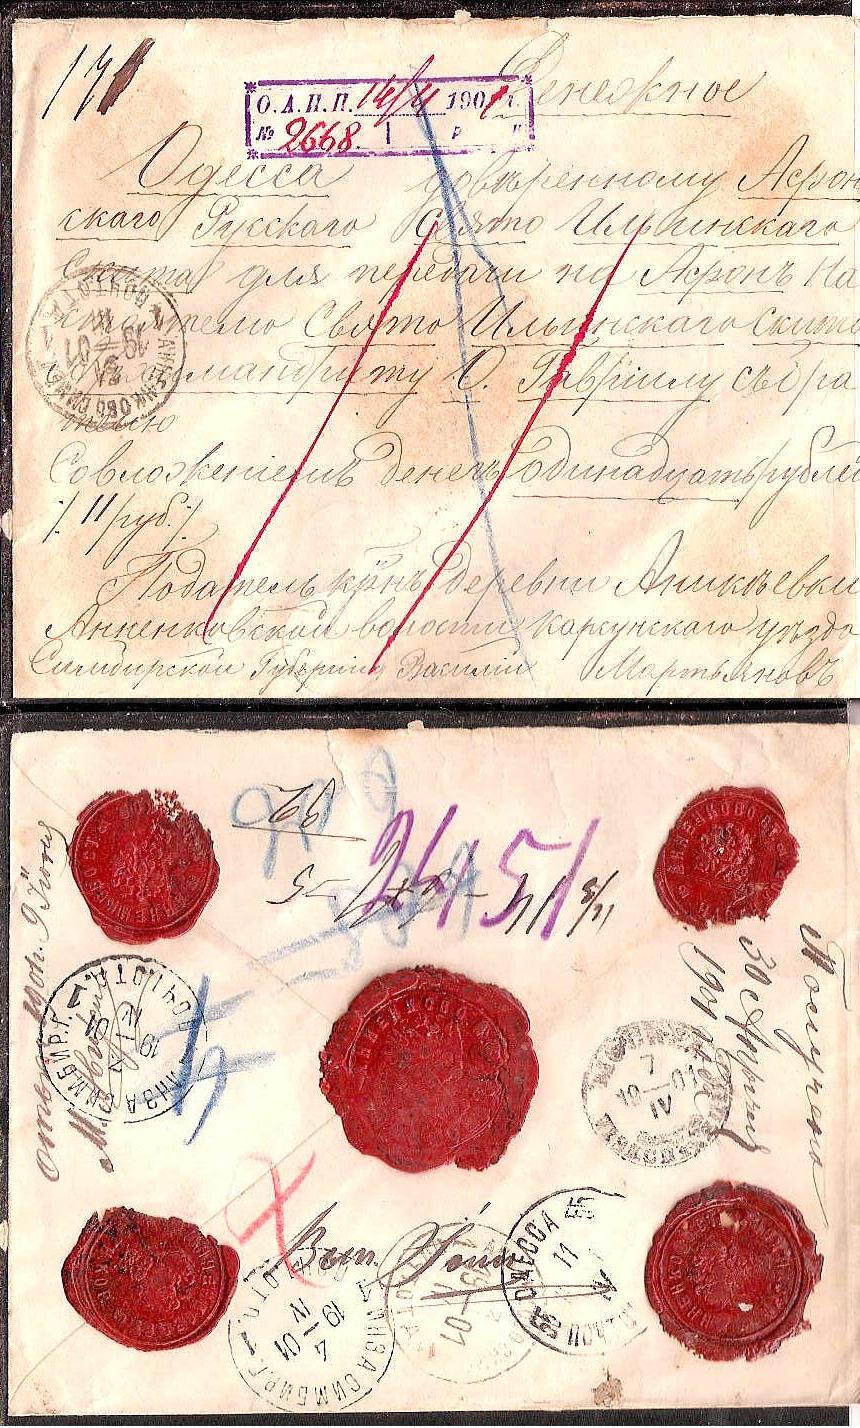 Russia Postal History - Gubernia Simbirsk gubernia Scott 701901 